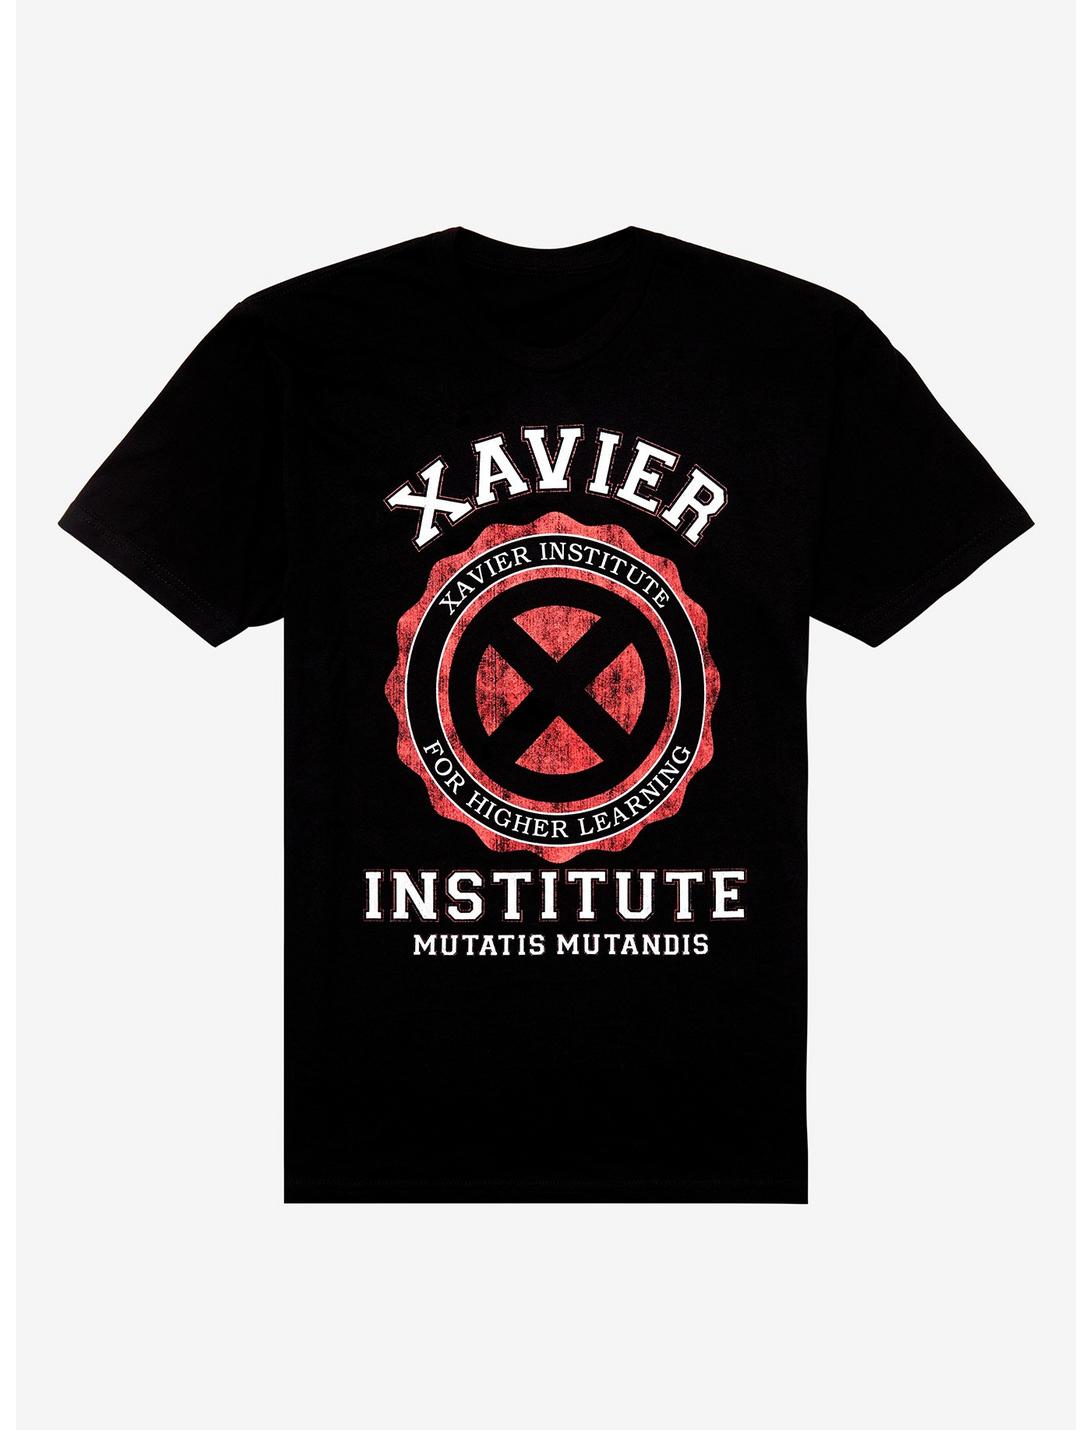 Marvel X-Men Xavier School T-Shirt, RED, hi-res